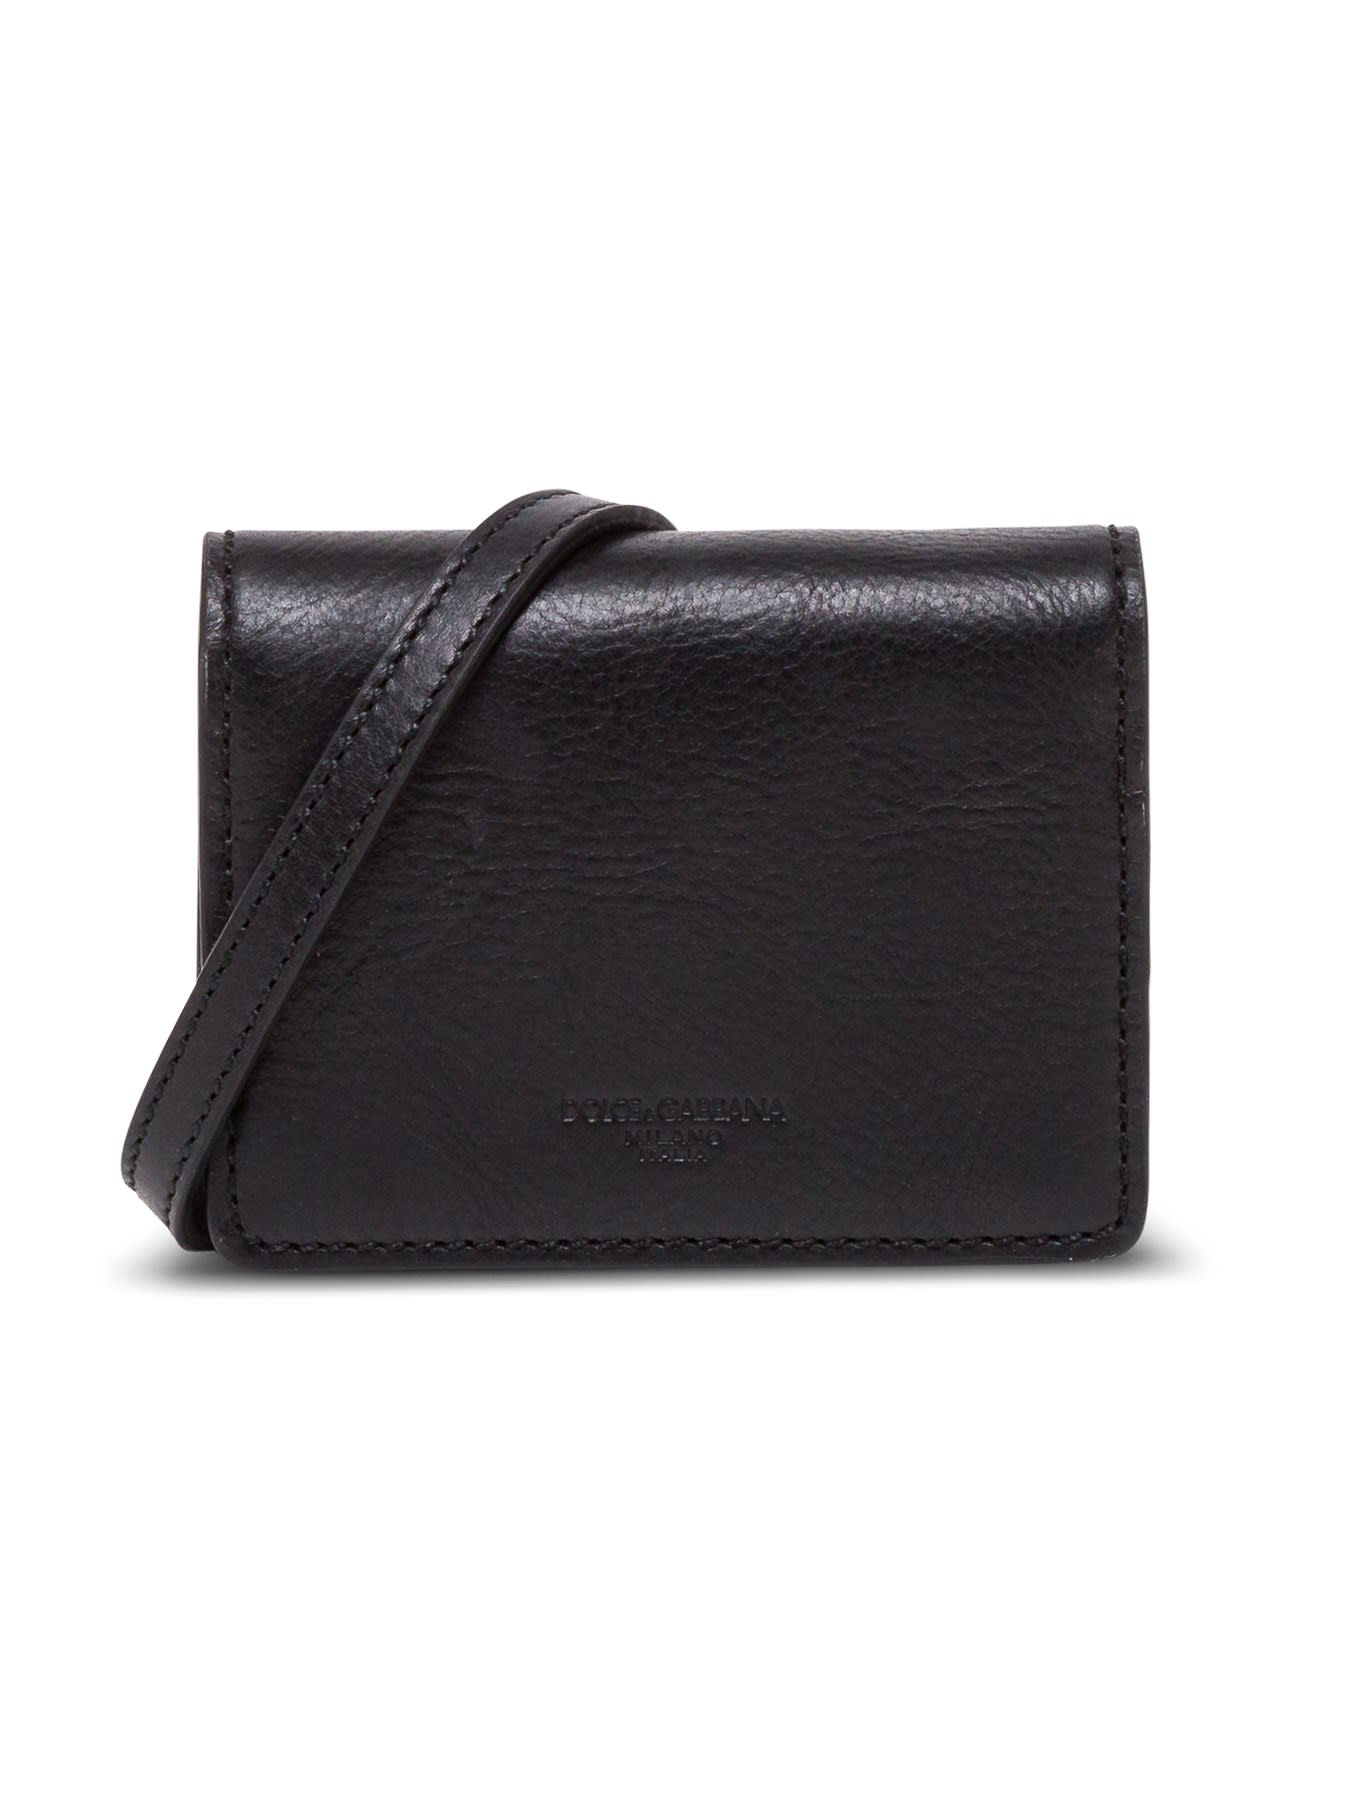 Dolce & Gabbana Black Leather Wallet With Shoulder Strap